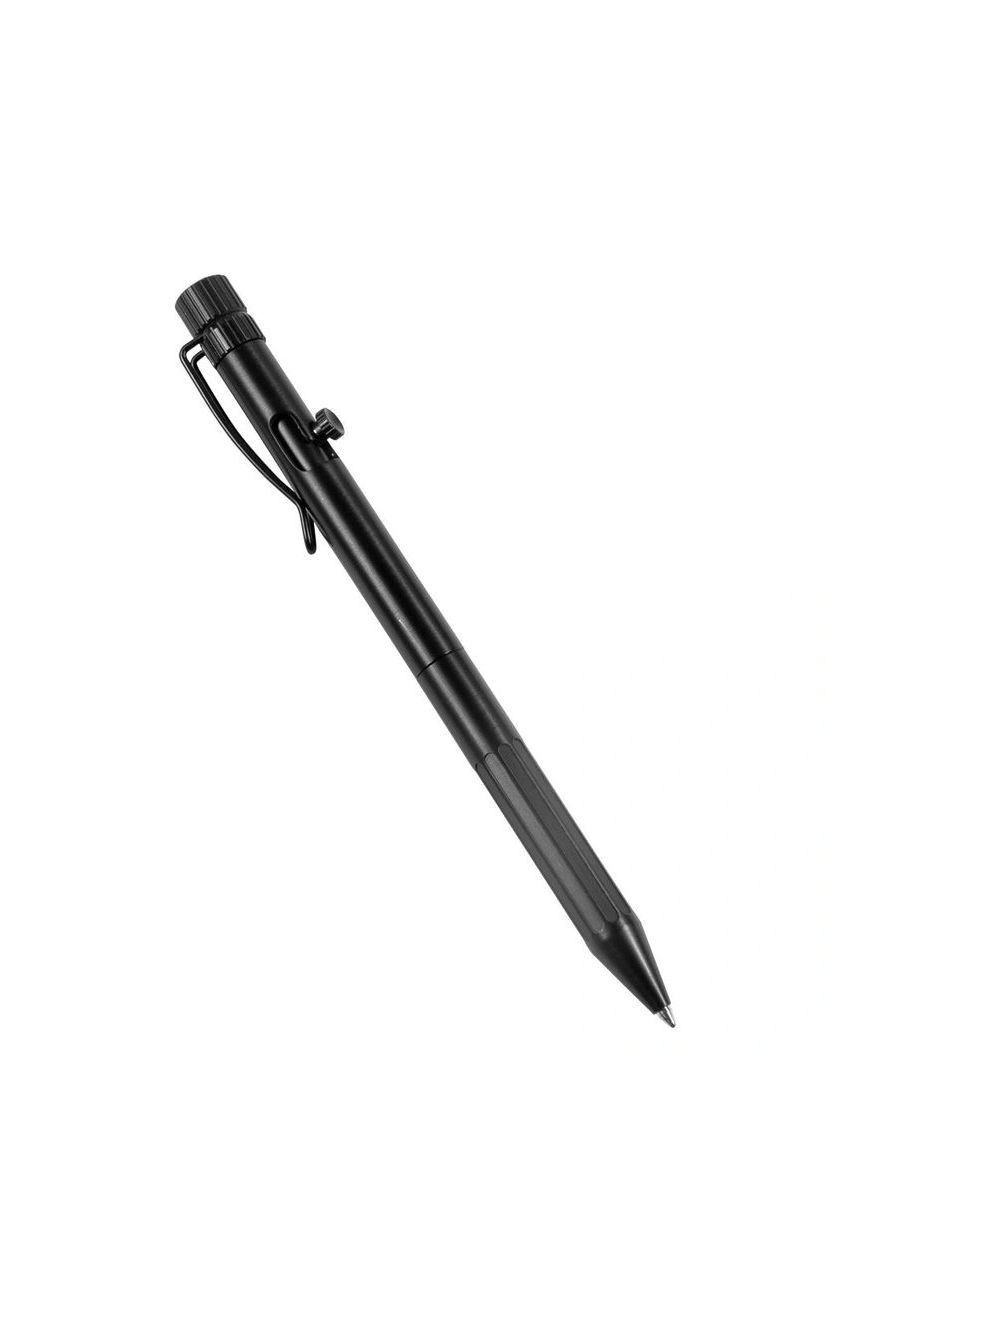 Bolt-Action Pen - Black w/ Black Ink